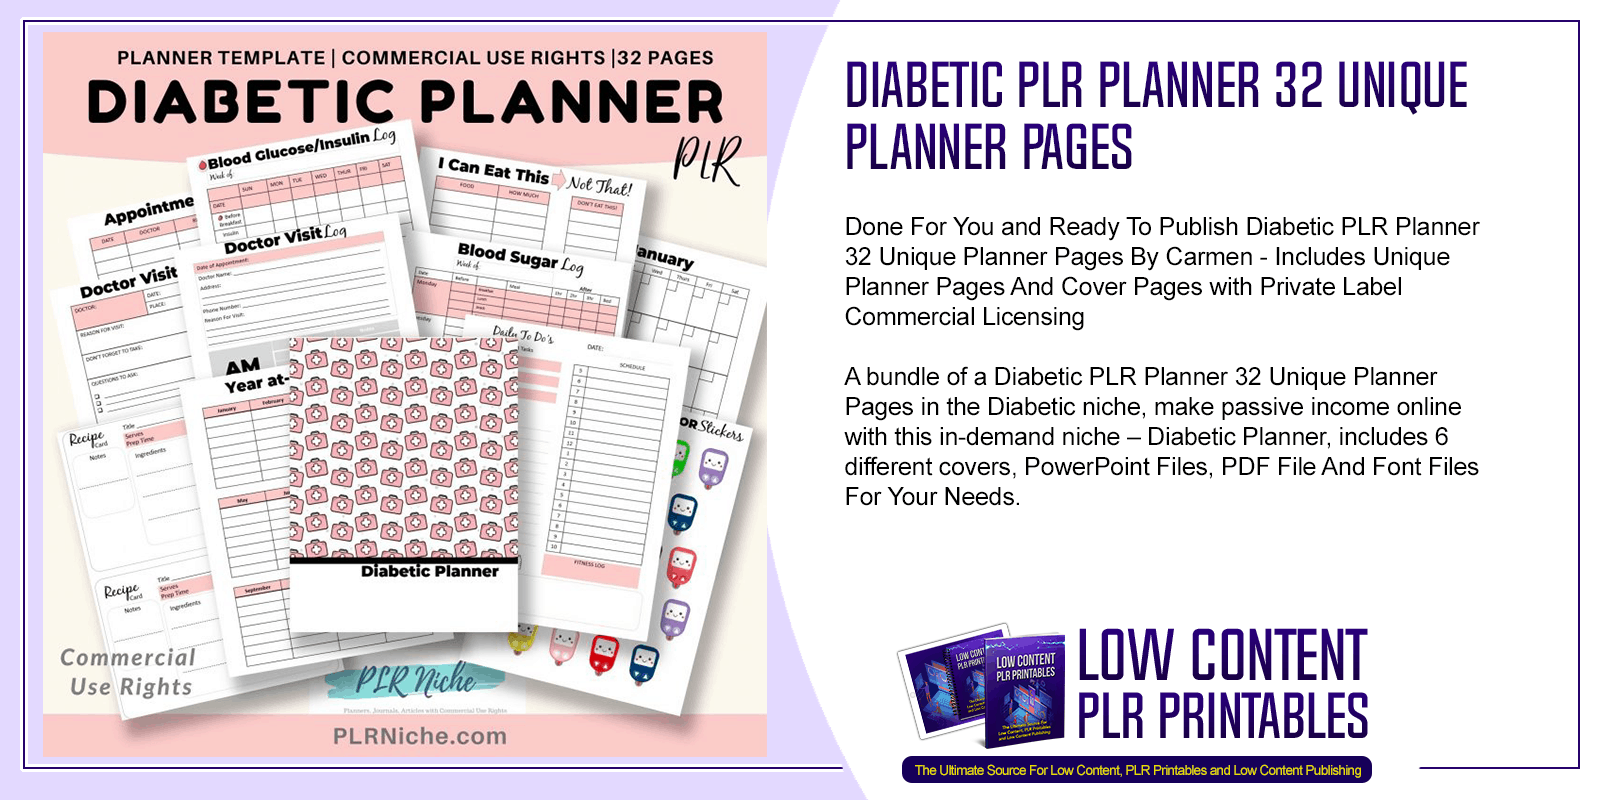 Diabetic PLR Planner 32 Unique Planner Pages